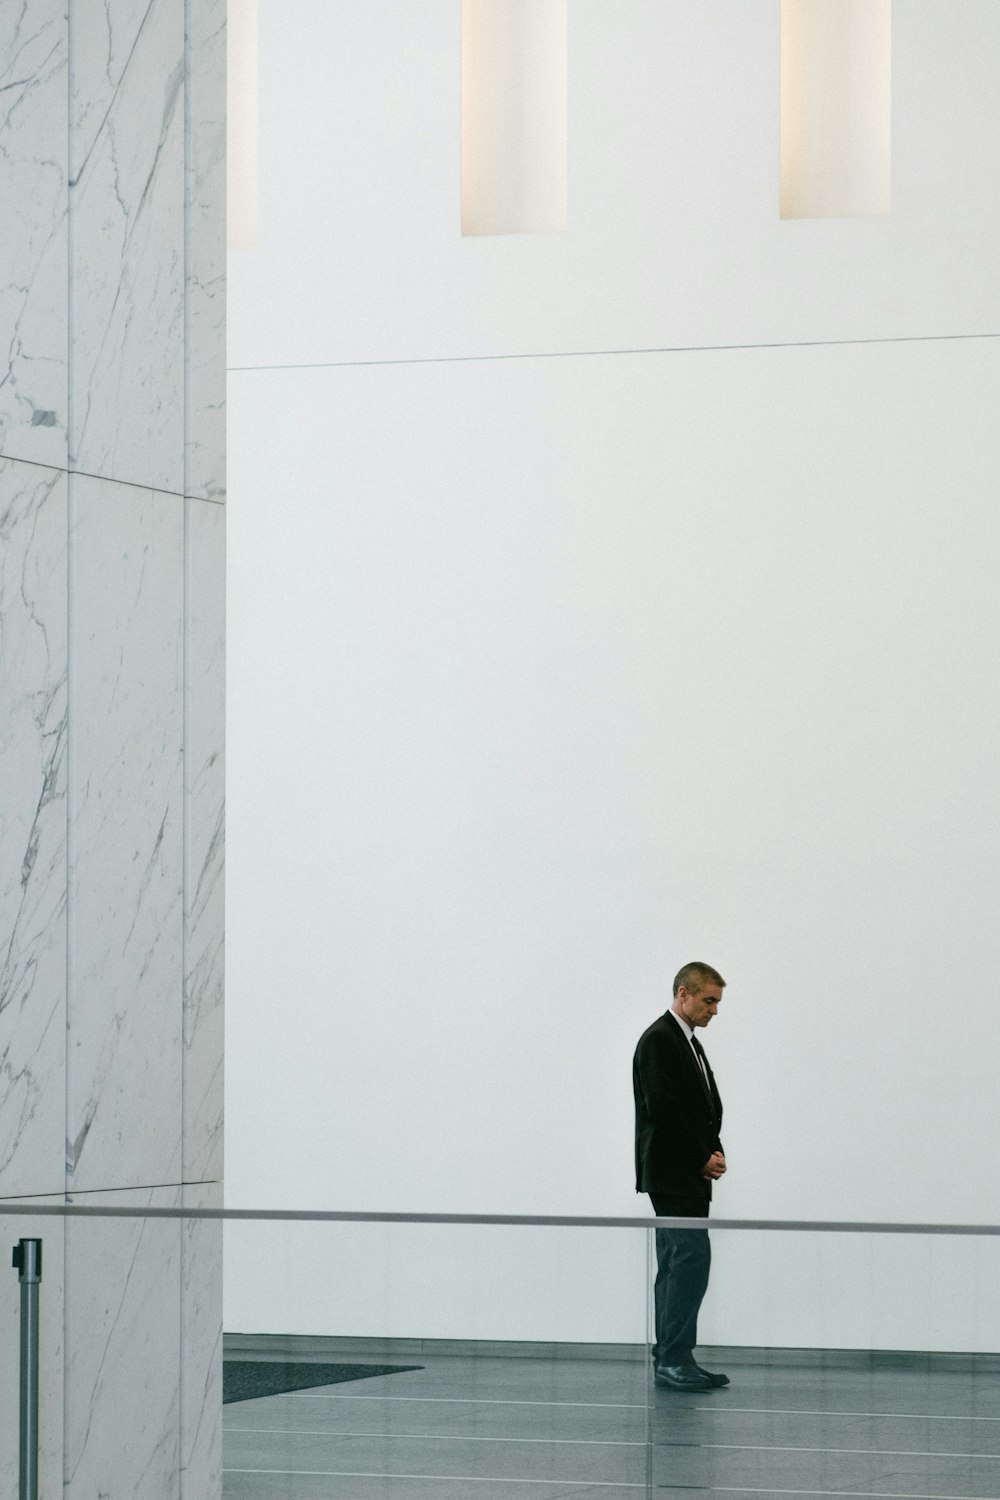 검은 재킷을 입은 남자가 흰 콘크리트 벽 옆에 서 있다